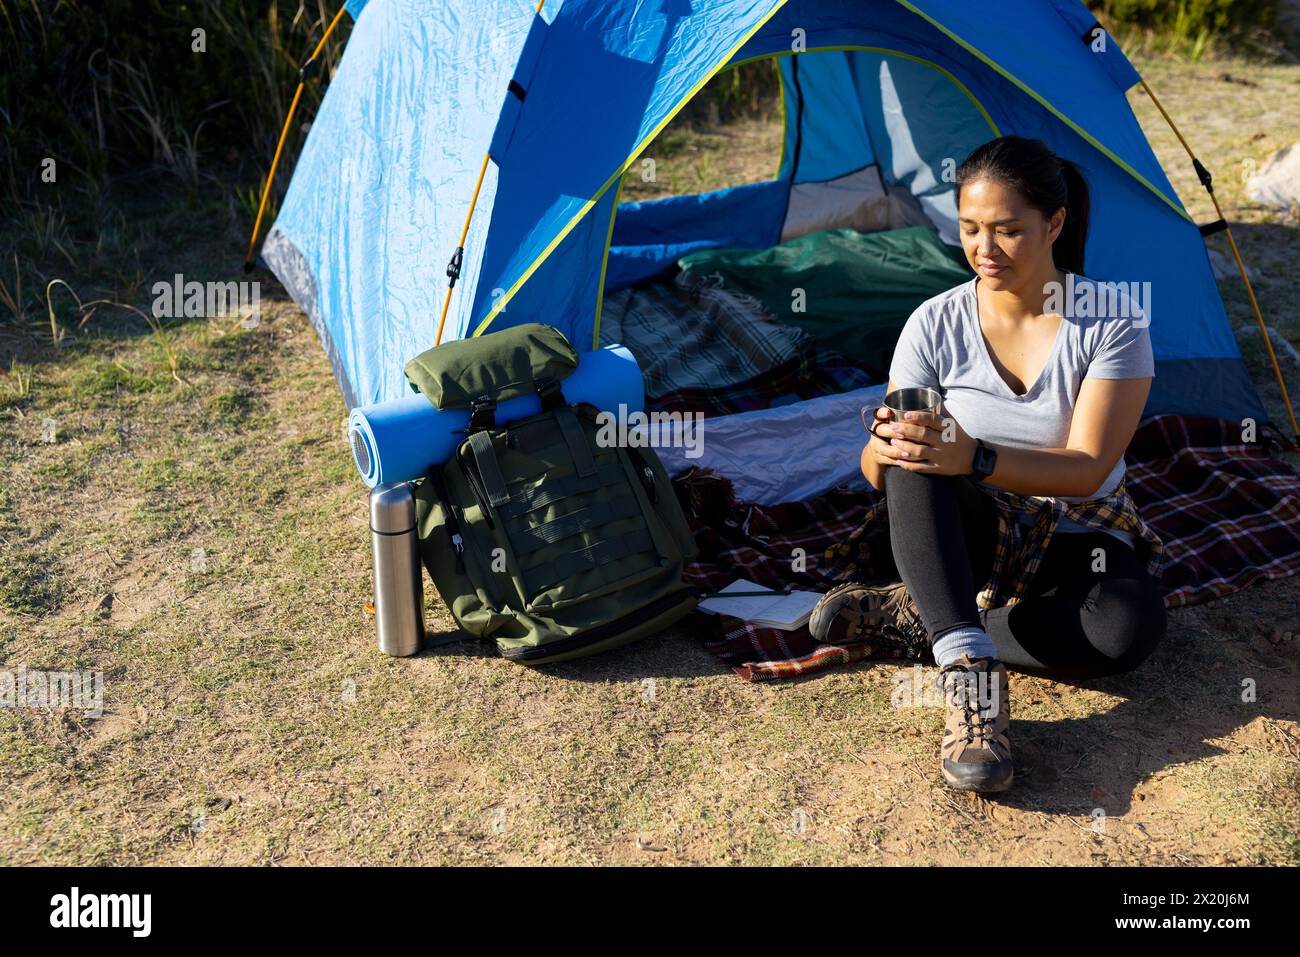 Randonneur féminin biracial tenant une tasse est assis près d'une tente. Elle a les cheveux bruns, les yeux foncés, et porte des vêtements de plein air décontractés, inaltérés, nature d'aventure. Banque D'Images